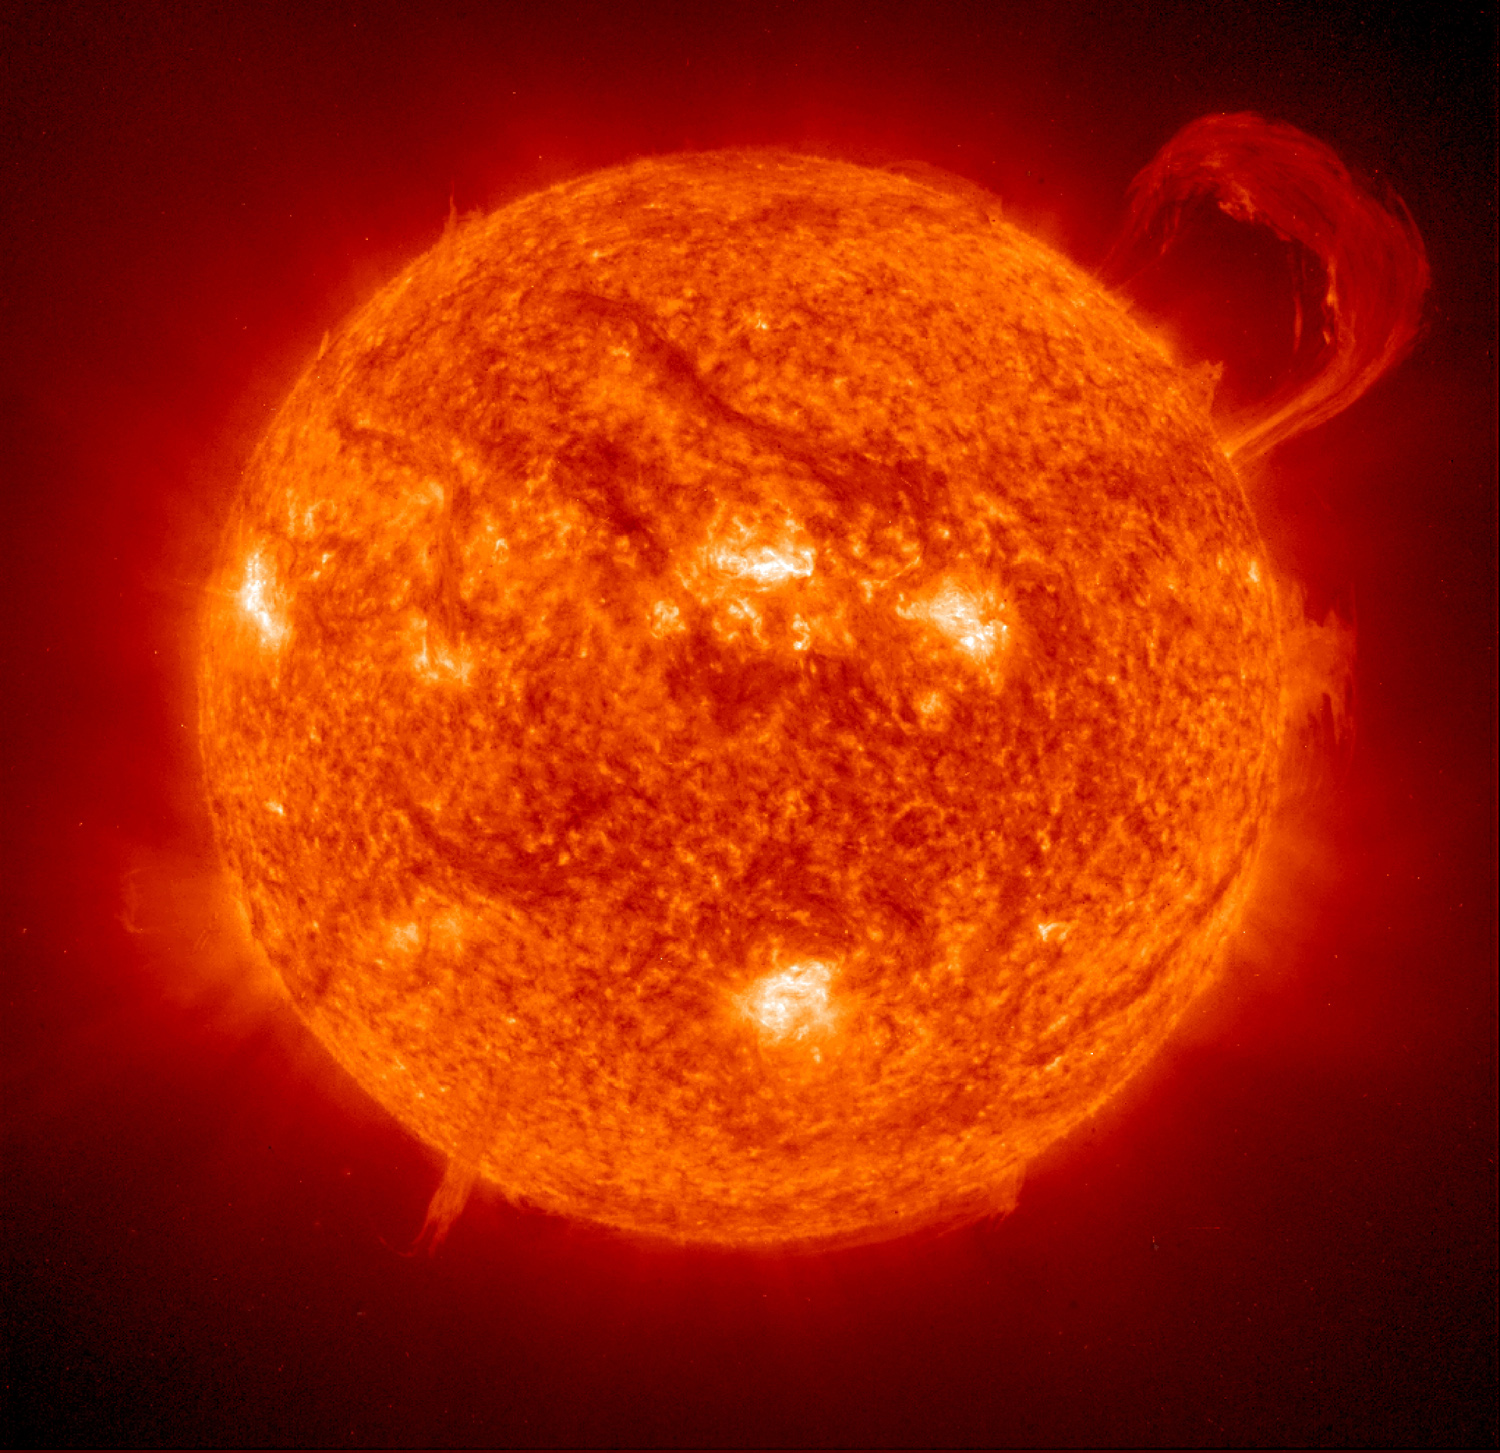 Sonne Sonnenaktivität: - Eruptionen - Fackeln - Sonnenwind, heißes Plasma (verursacht Polarlichter auf der Erde) - Magnetfeld - Effekte - Einfluß auf